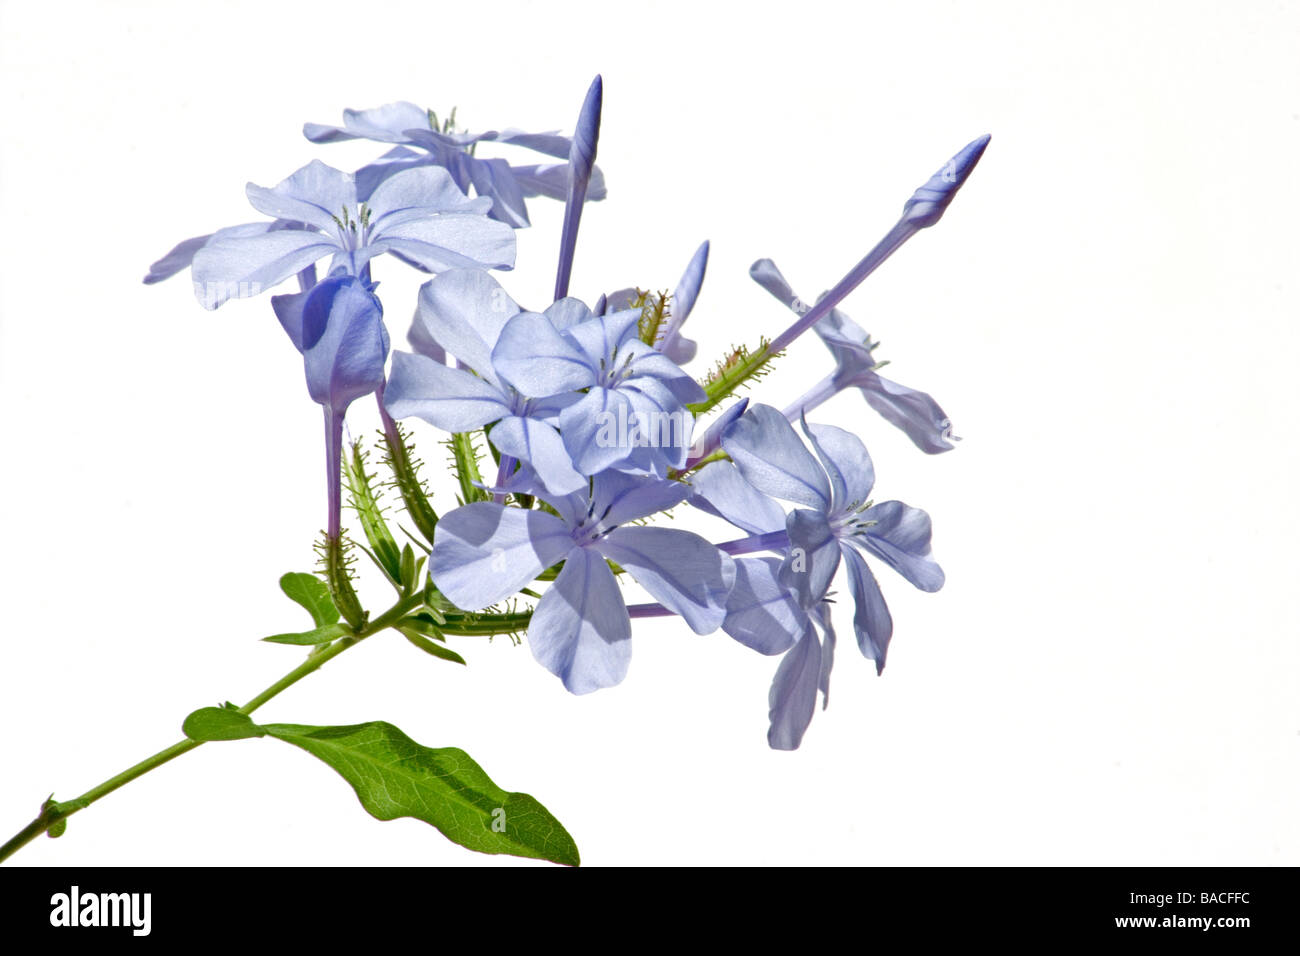 Close-up of blue jasmine on white background Stock Photo